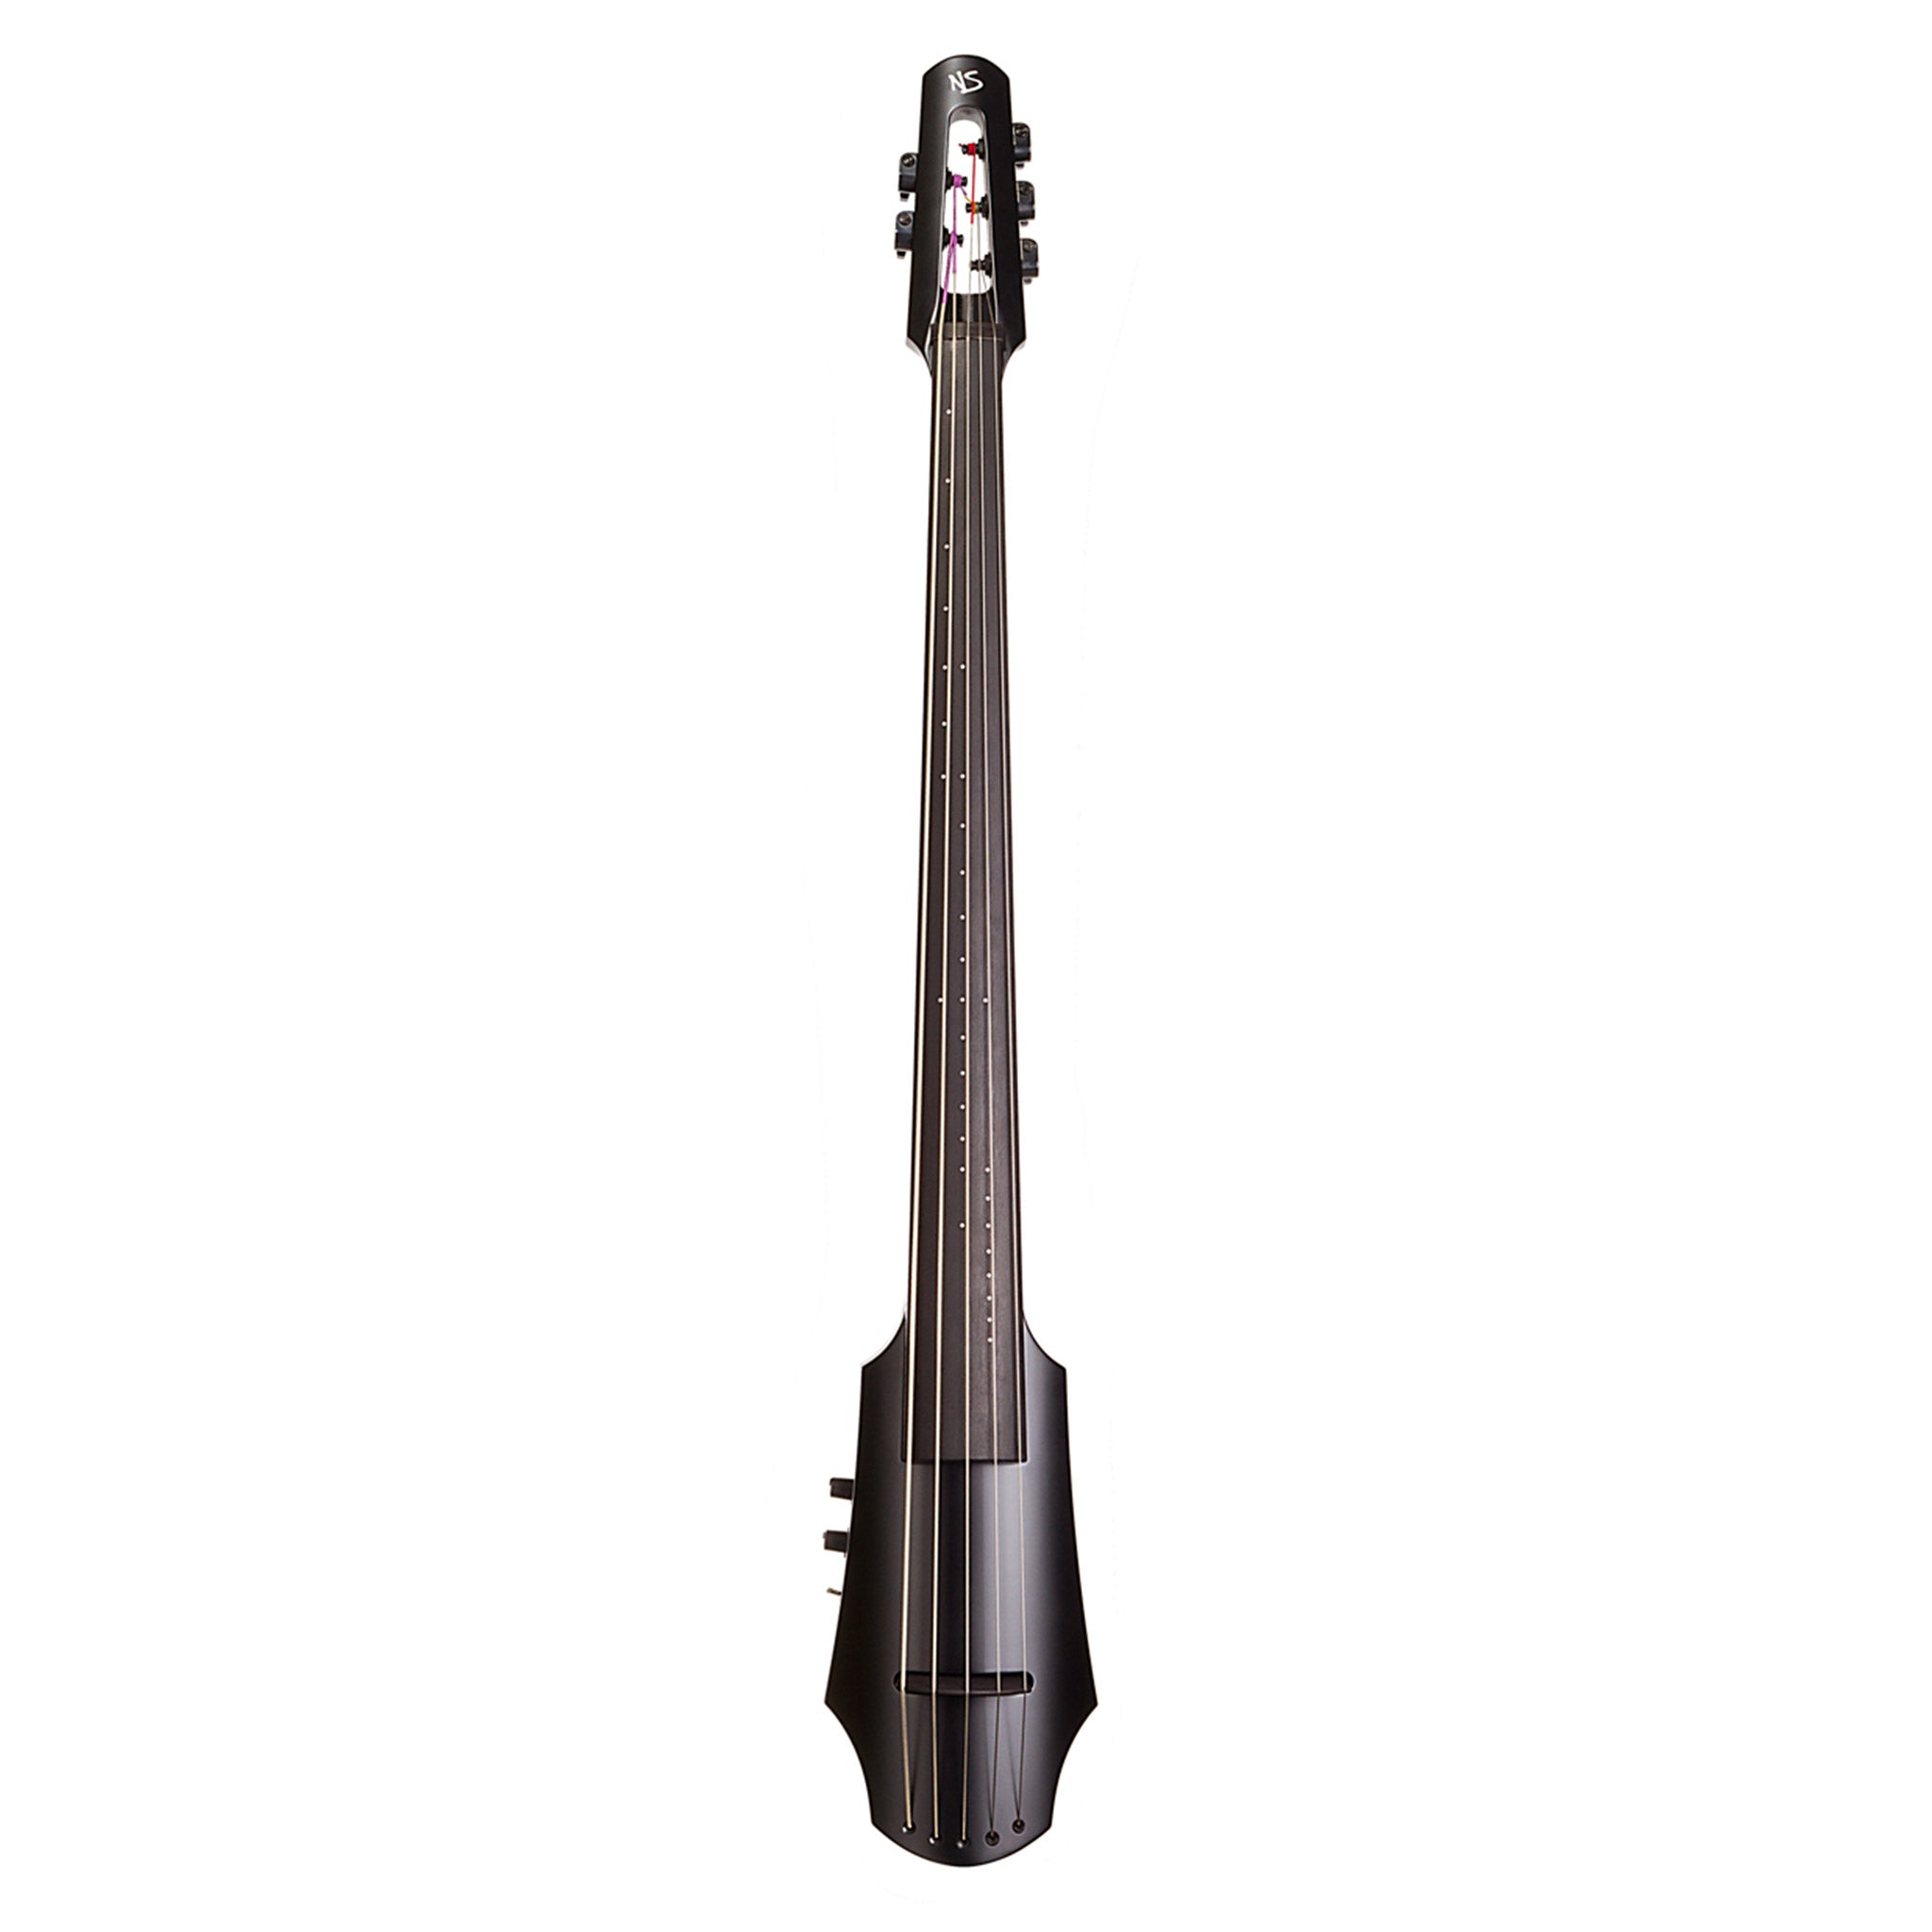 NS Design NXTa 5-string Electric Cello